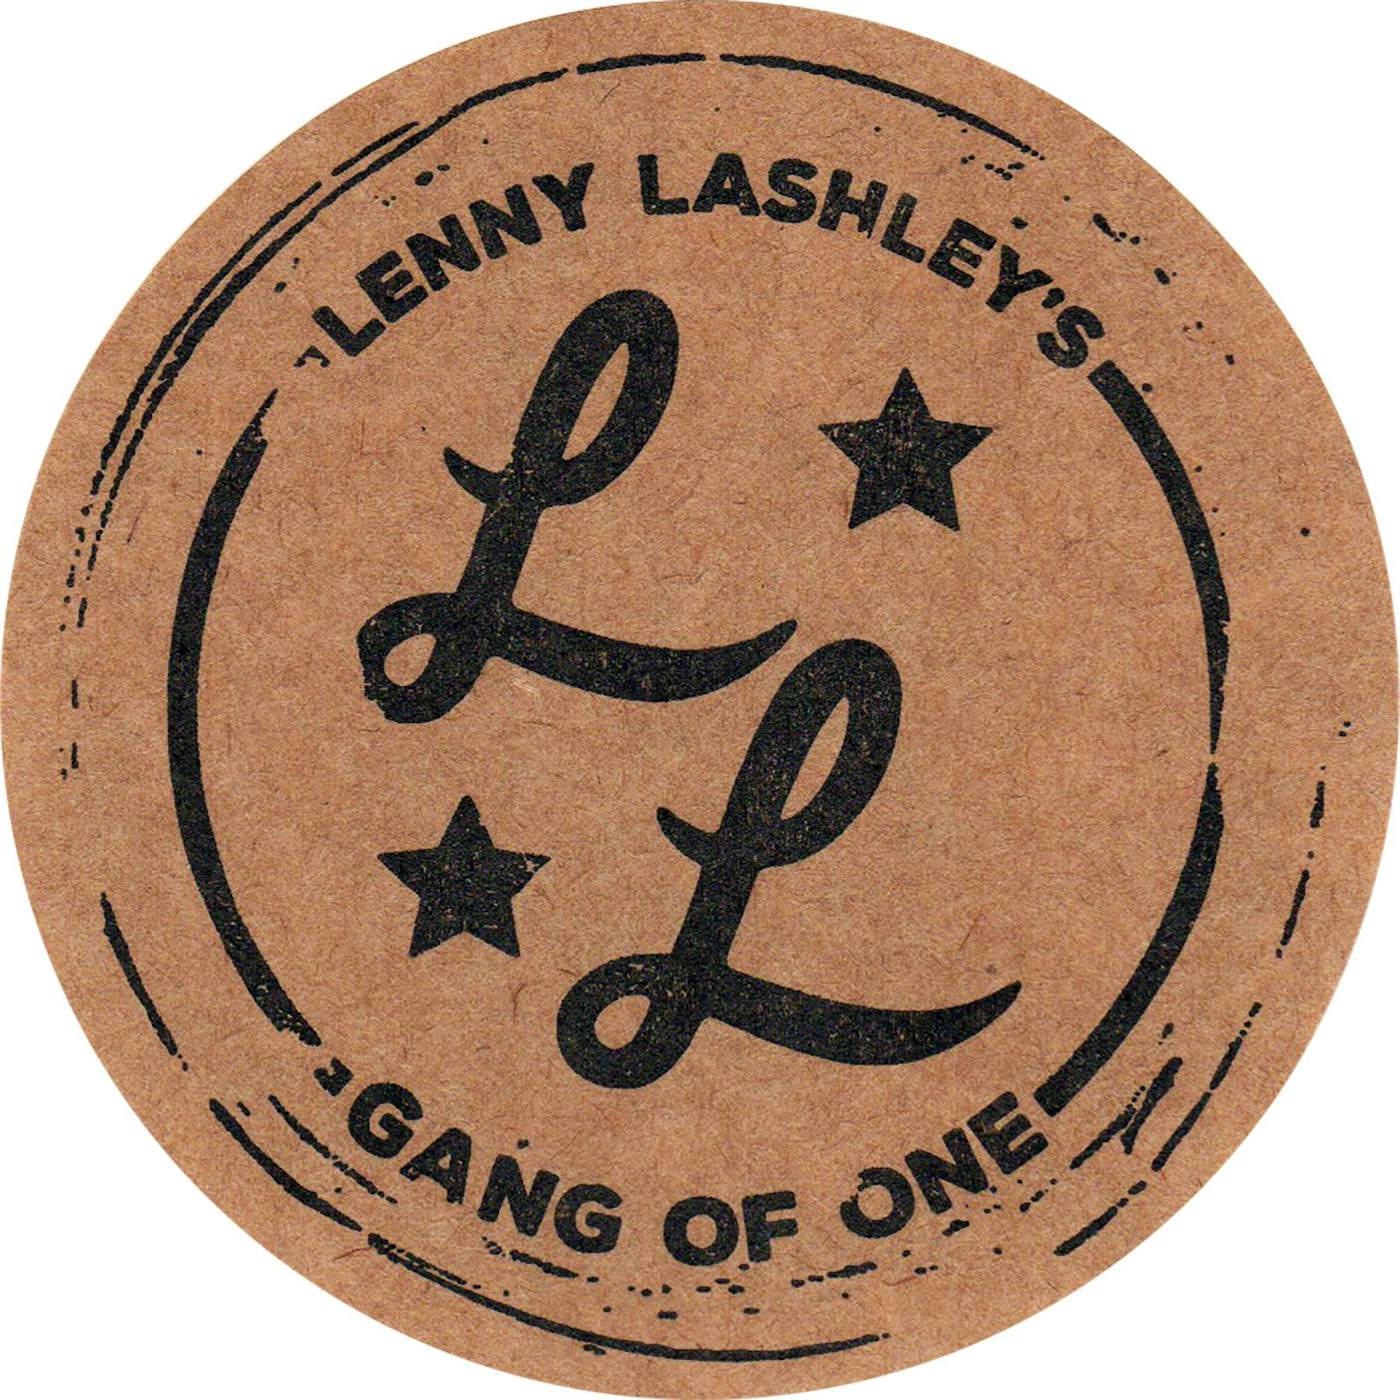 Lenny Lashley's Gang of One Lenny Lashley Gang of One - Logo - Sticker